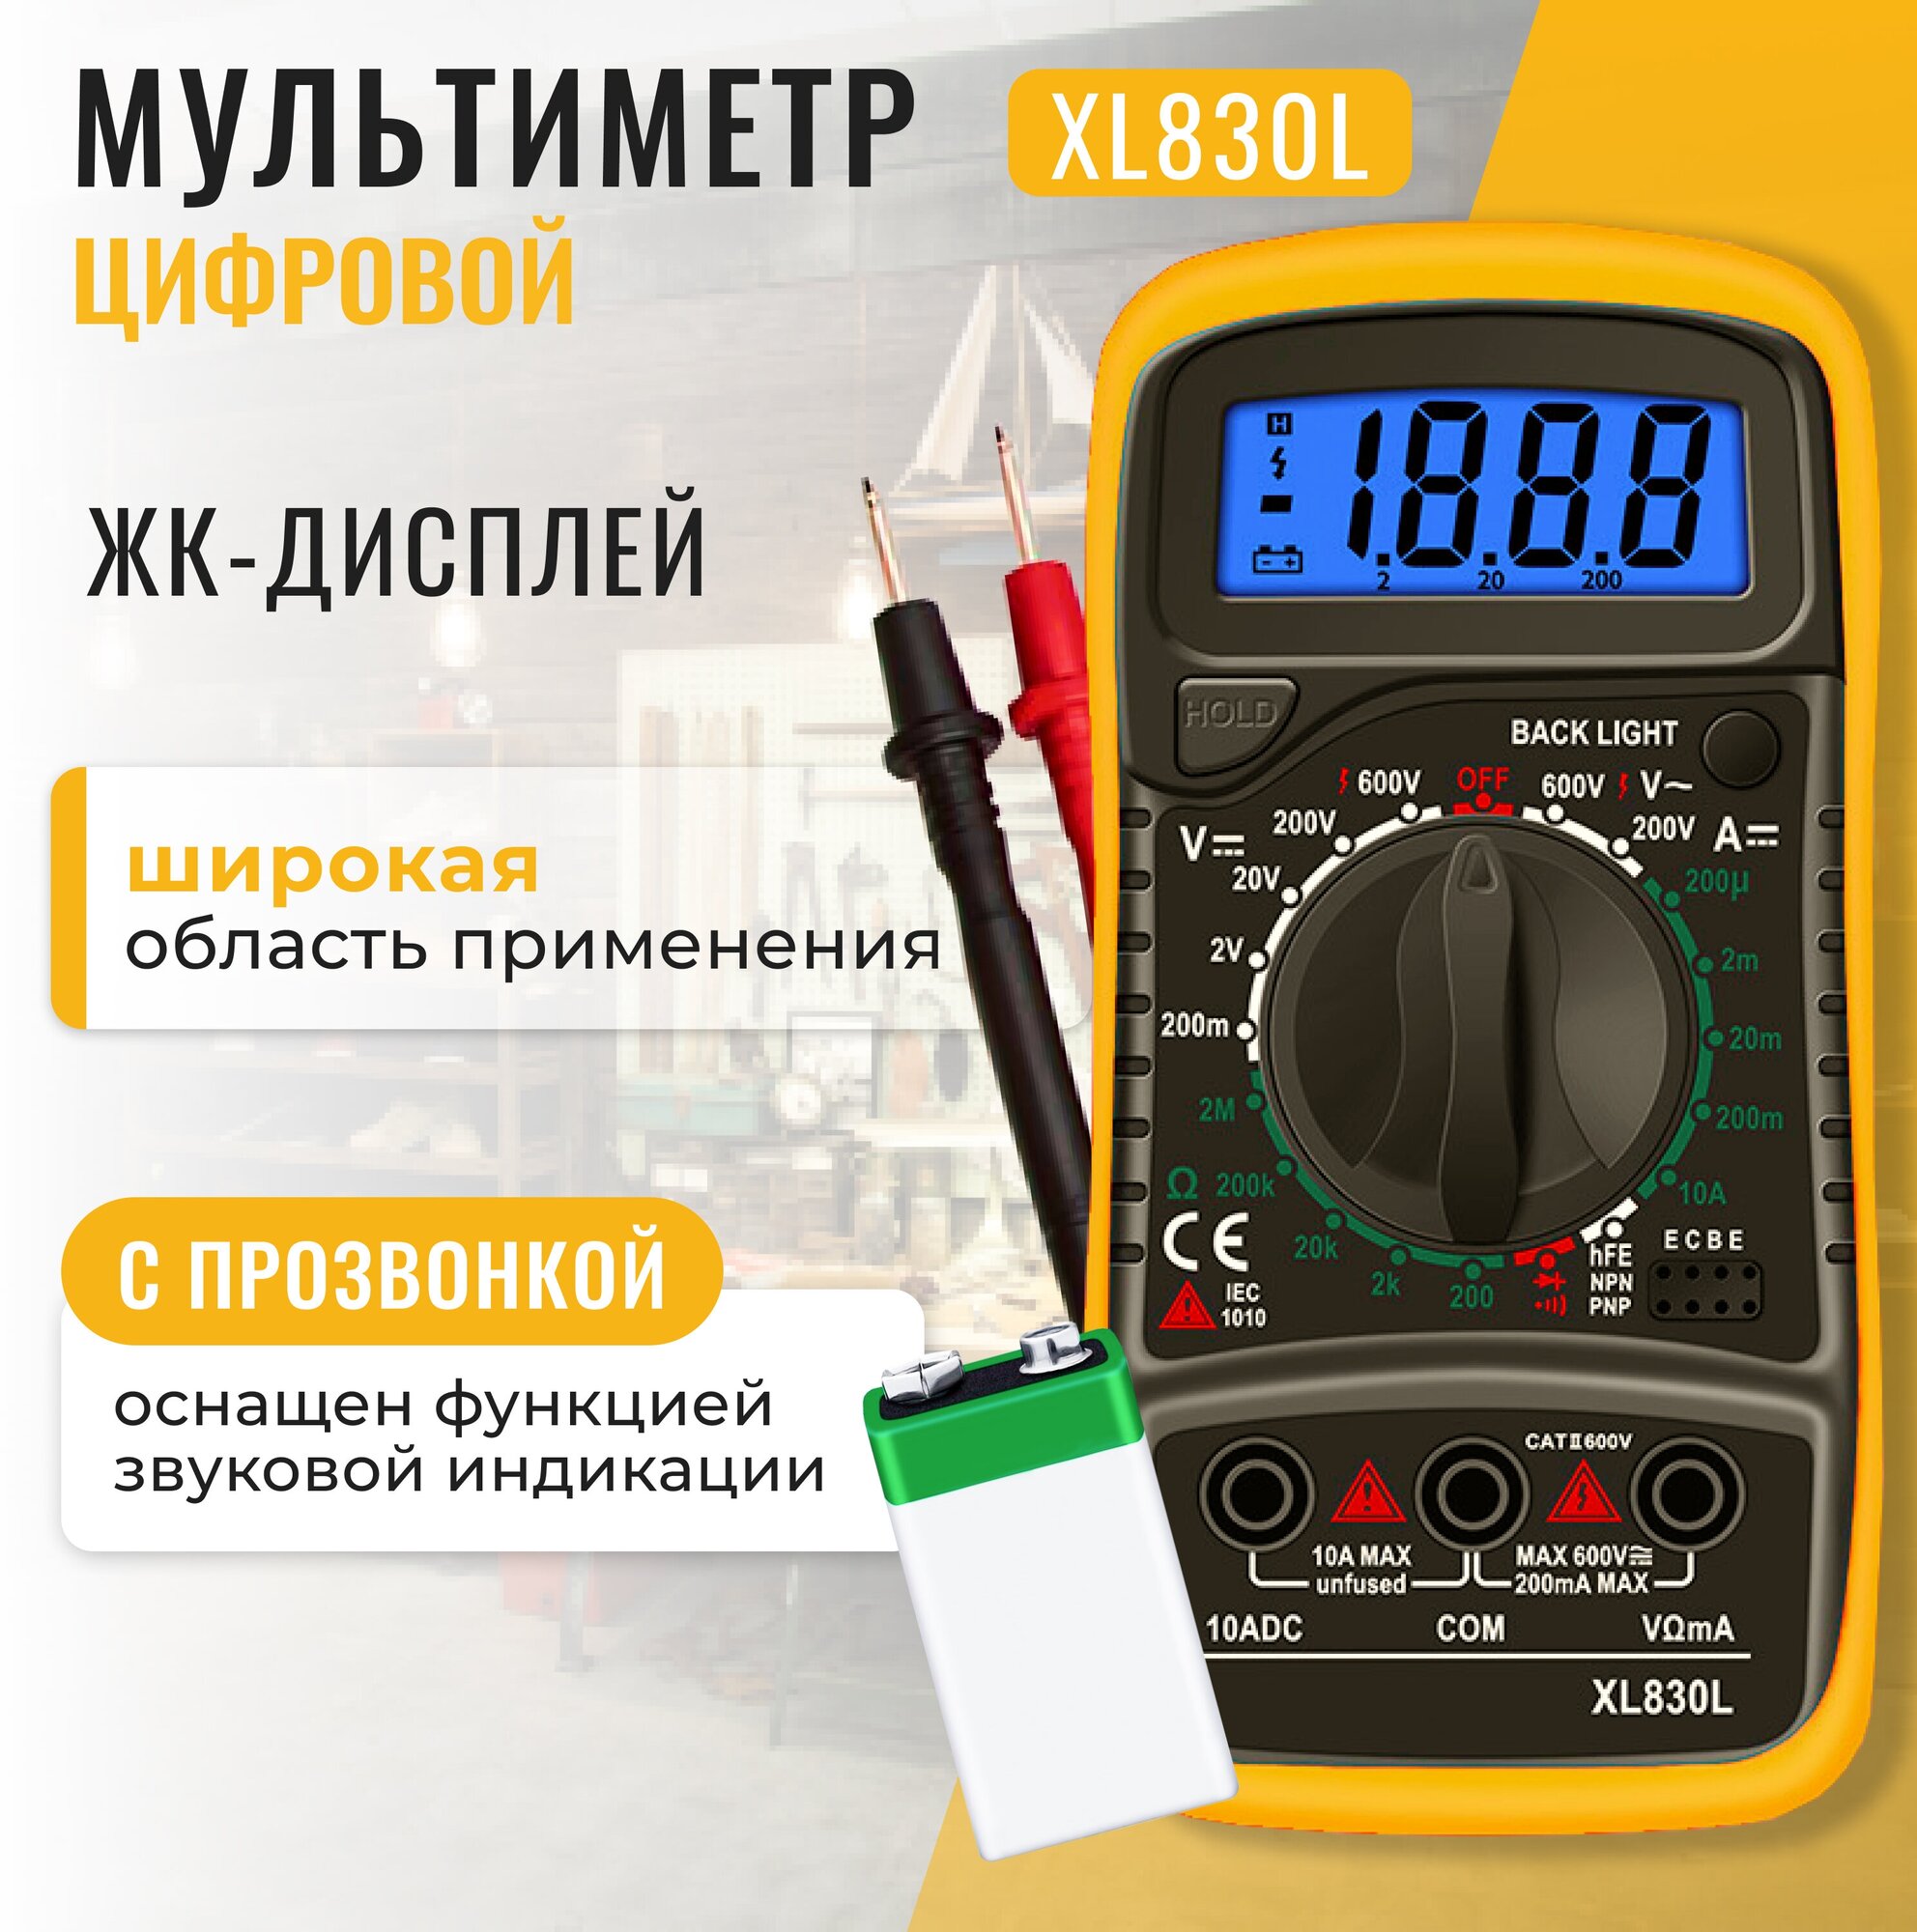 Желтый цифровой мультиметр XL830L с прозвонкой